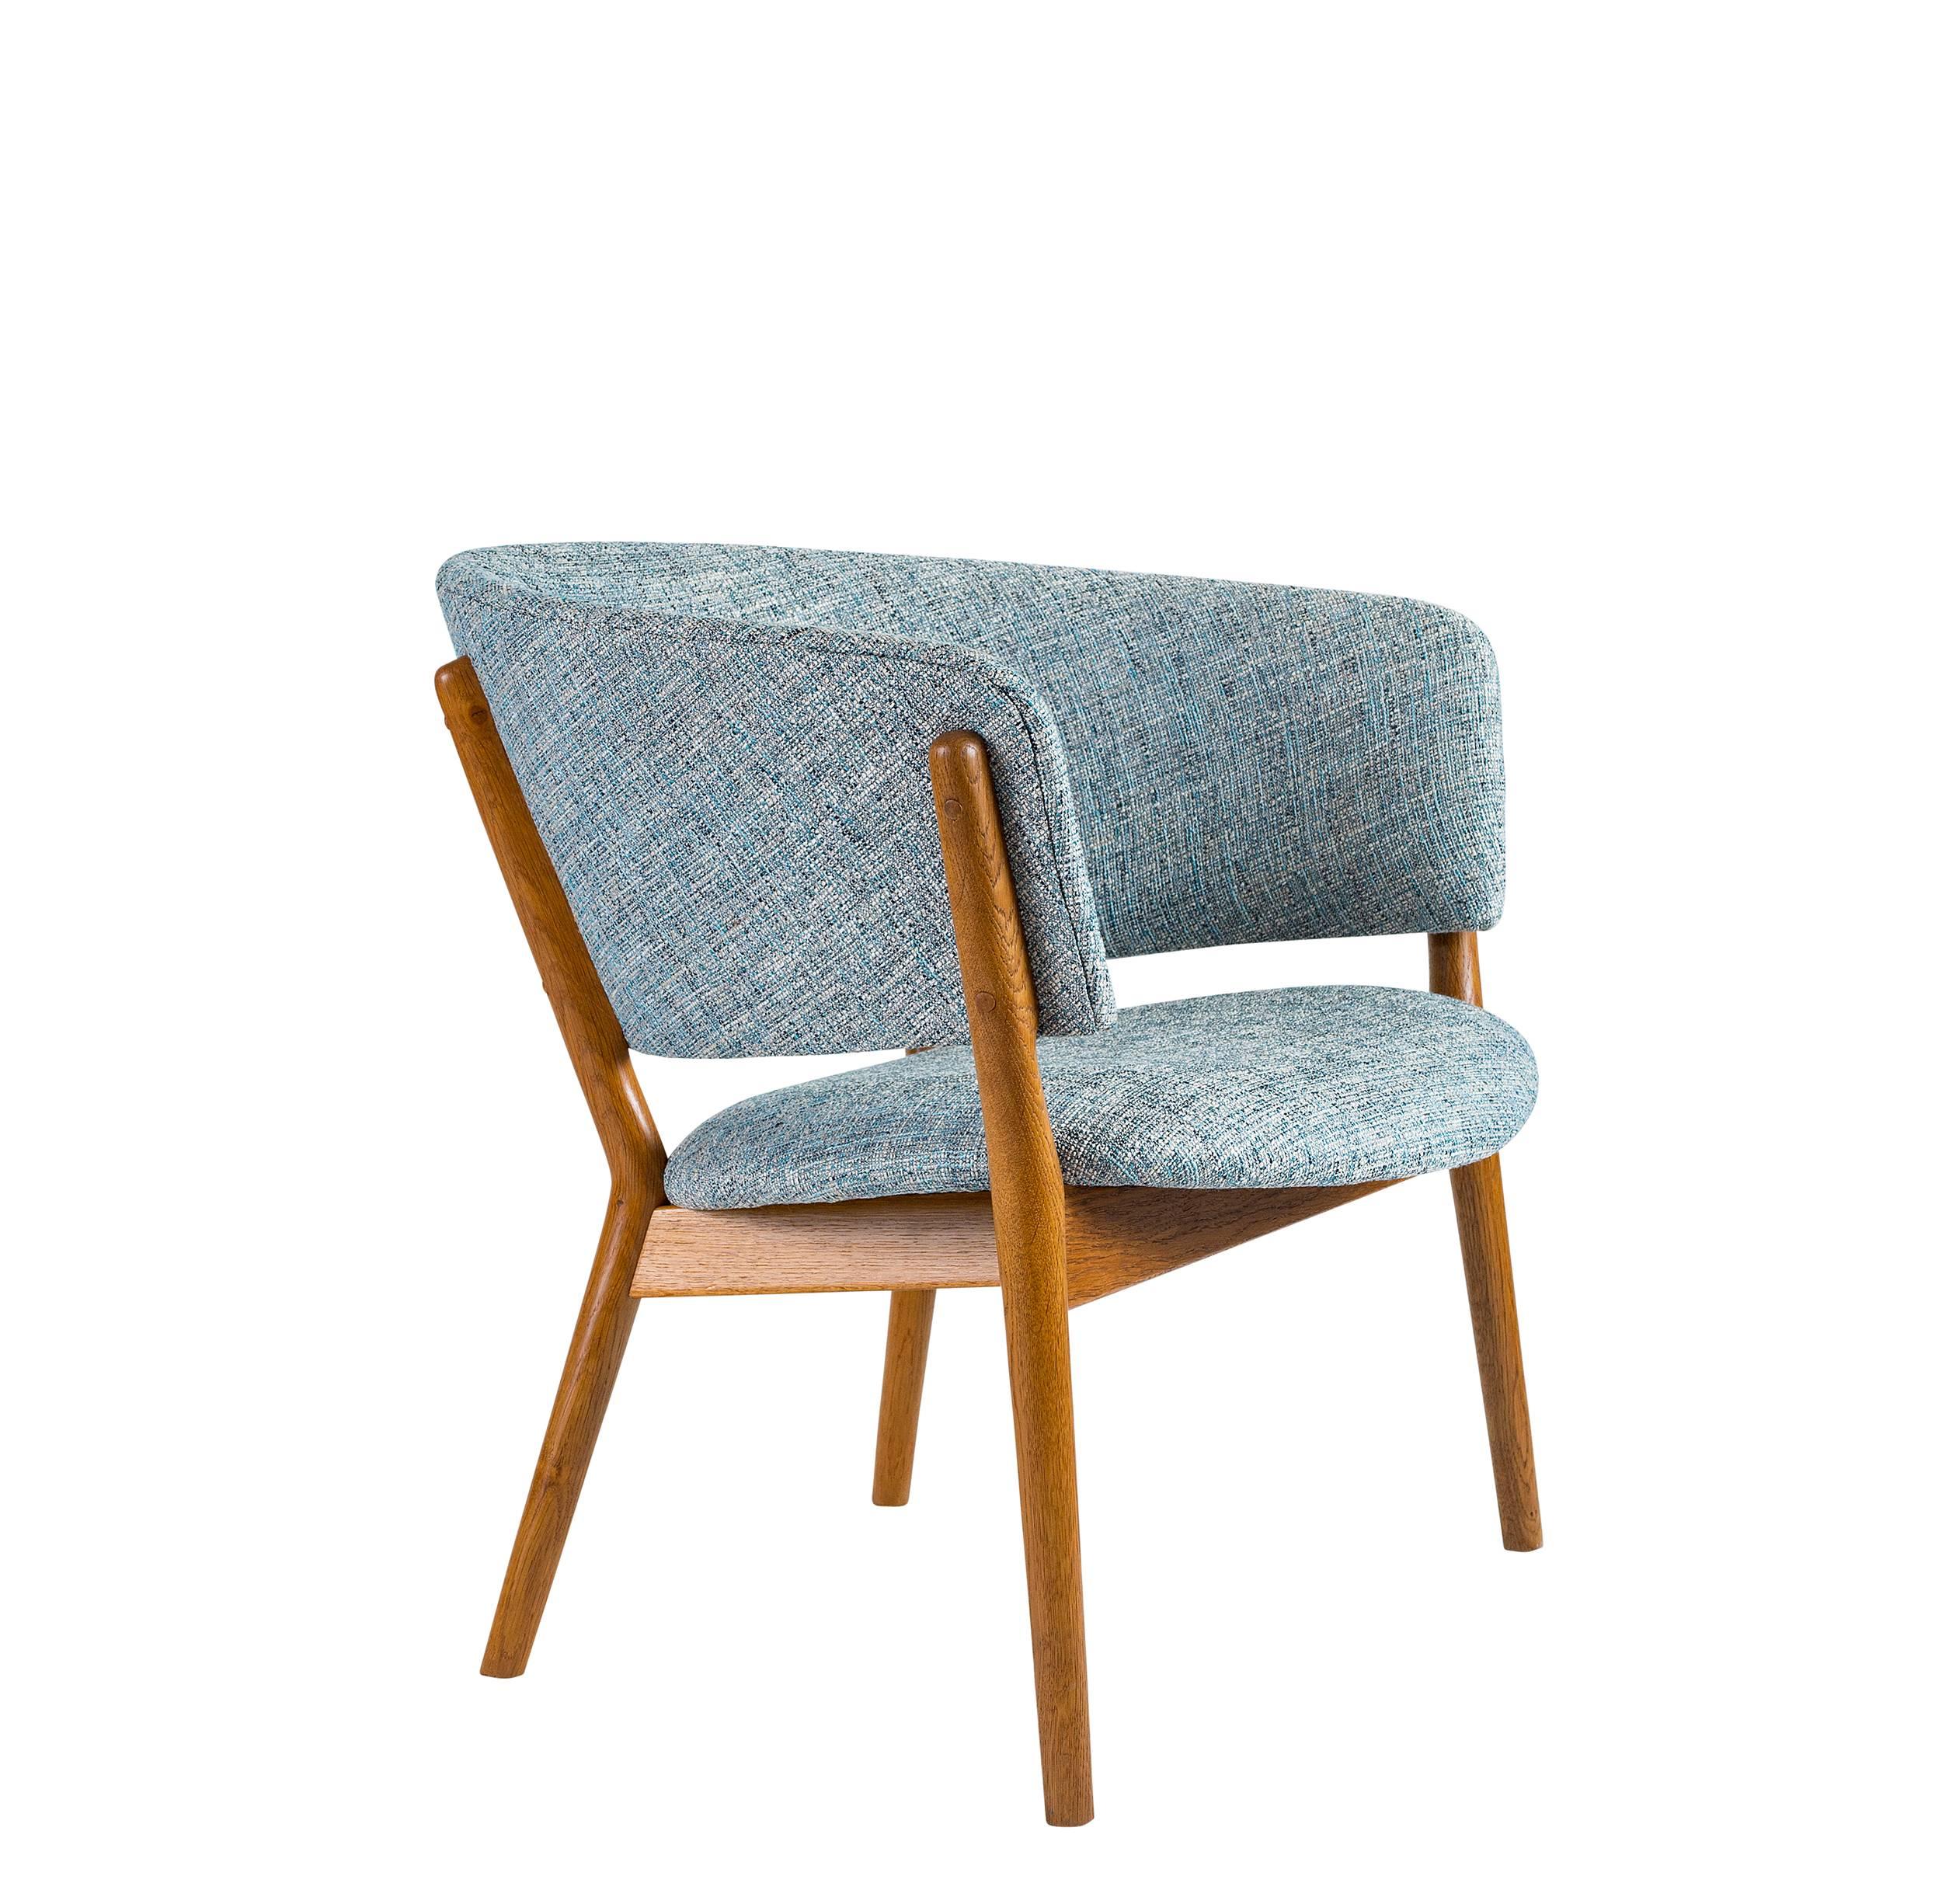 Nanna Ditzel Lounge Chair, entworfen 1952 und hergestellt von Knud Willadsen.